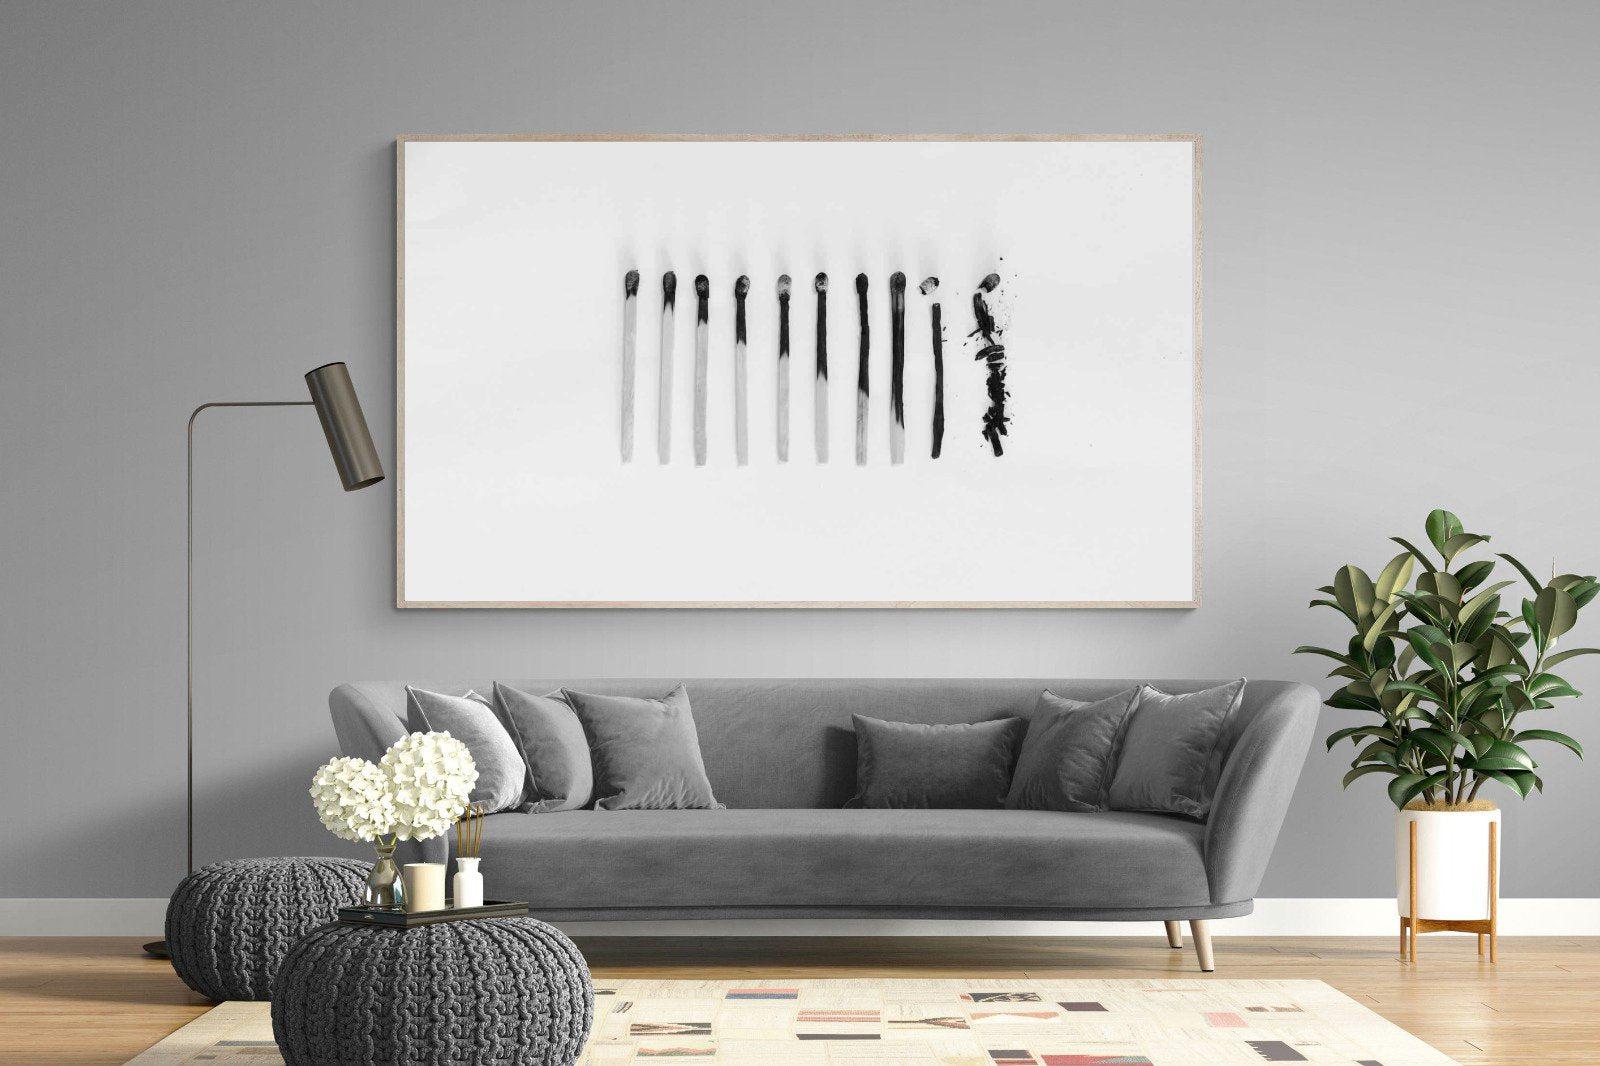 Matchsticks-Wall_Art-220 x 130cm-Mounted Canvas-Wood-Pixalot